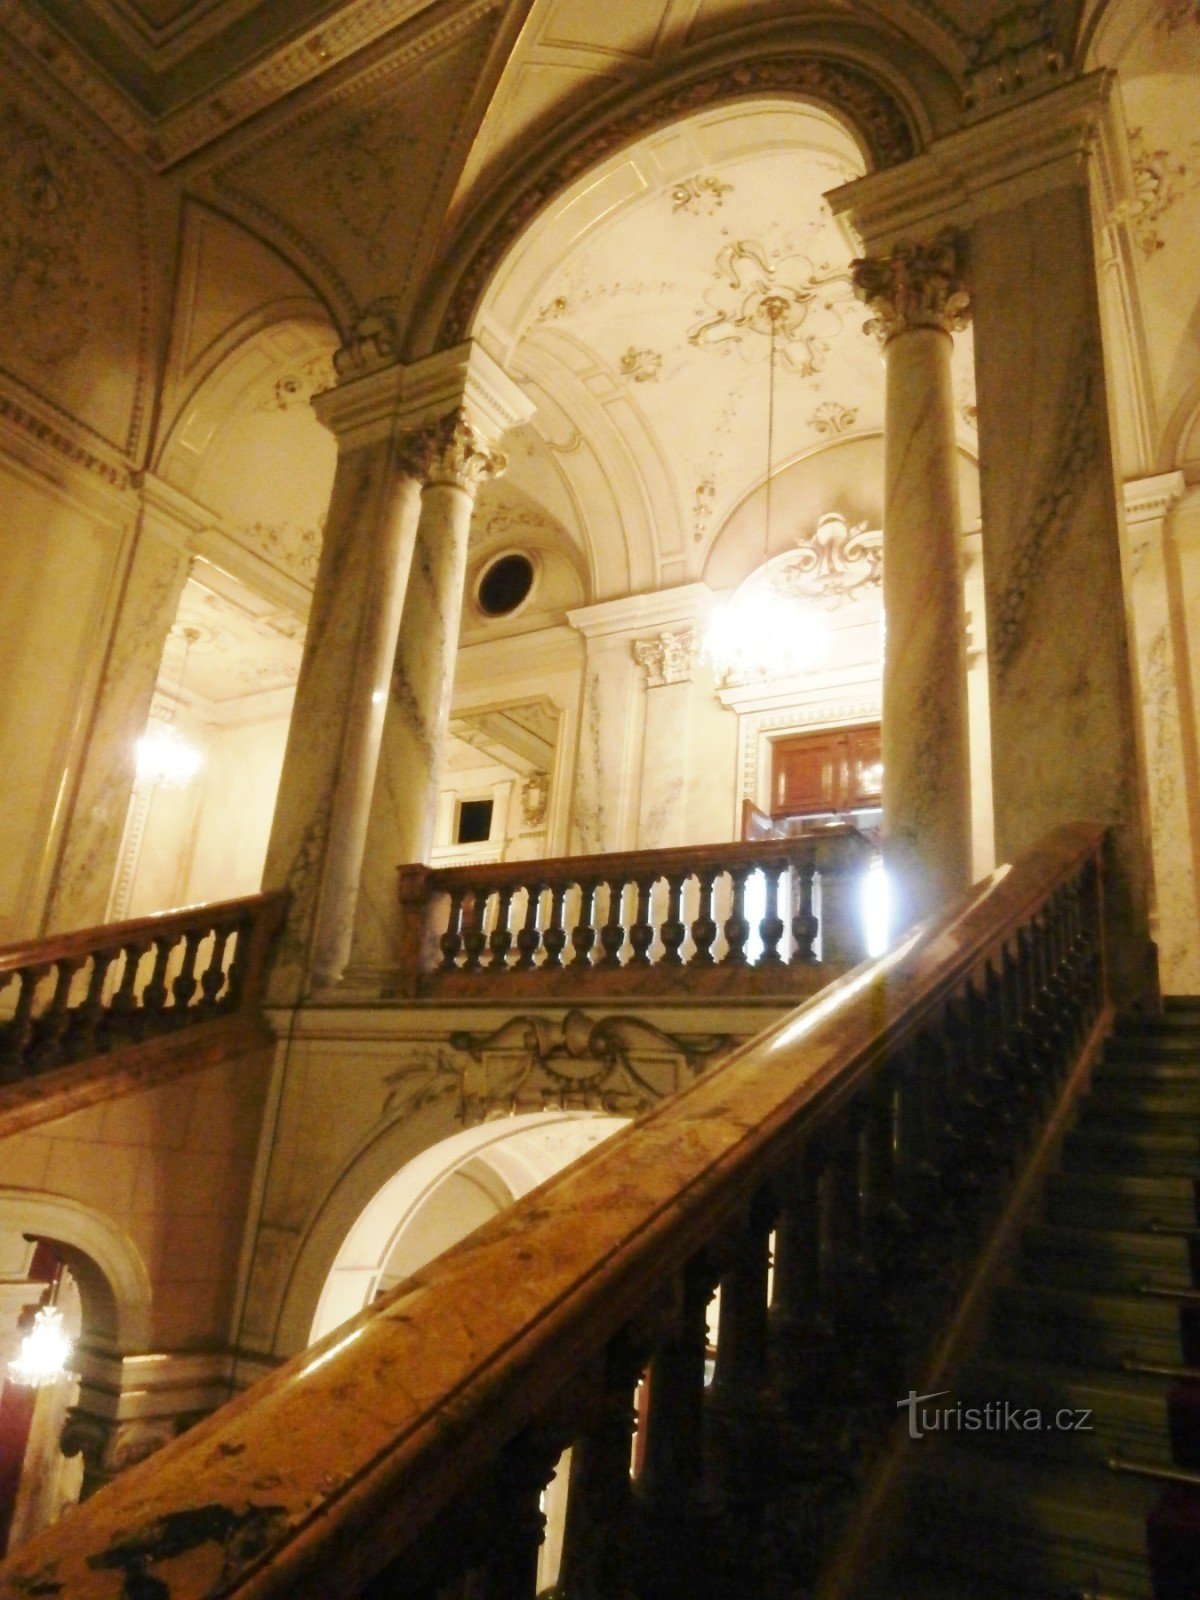 2. チーザシュケー・ラーズニェの階段